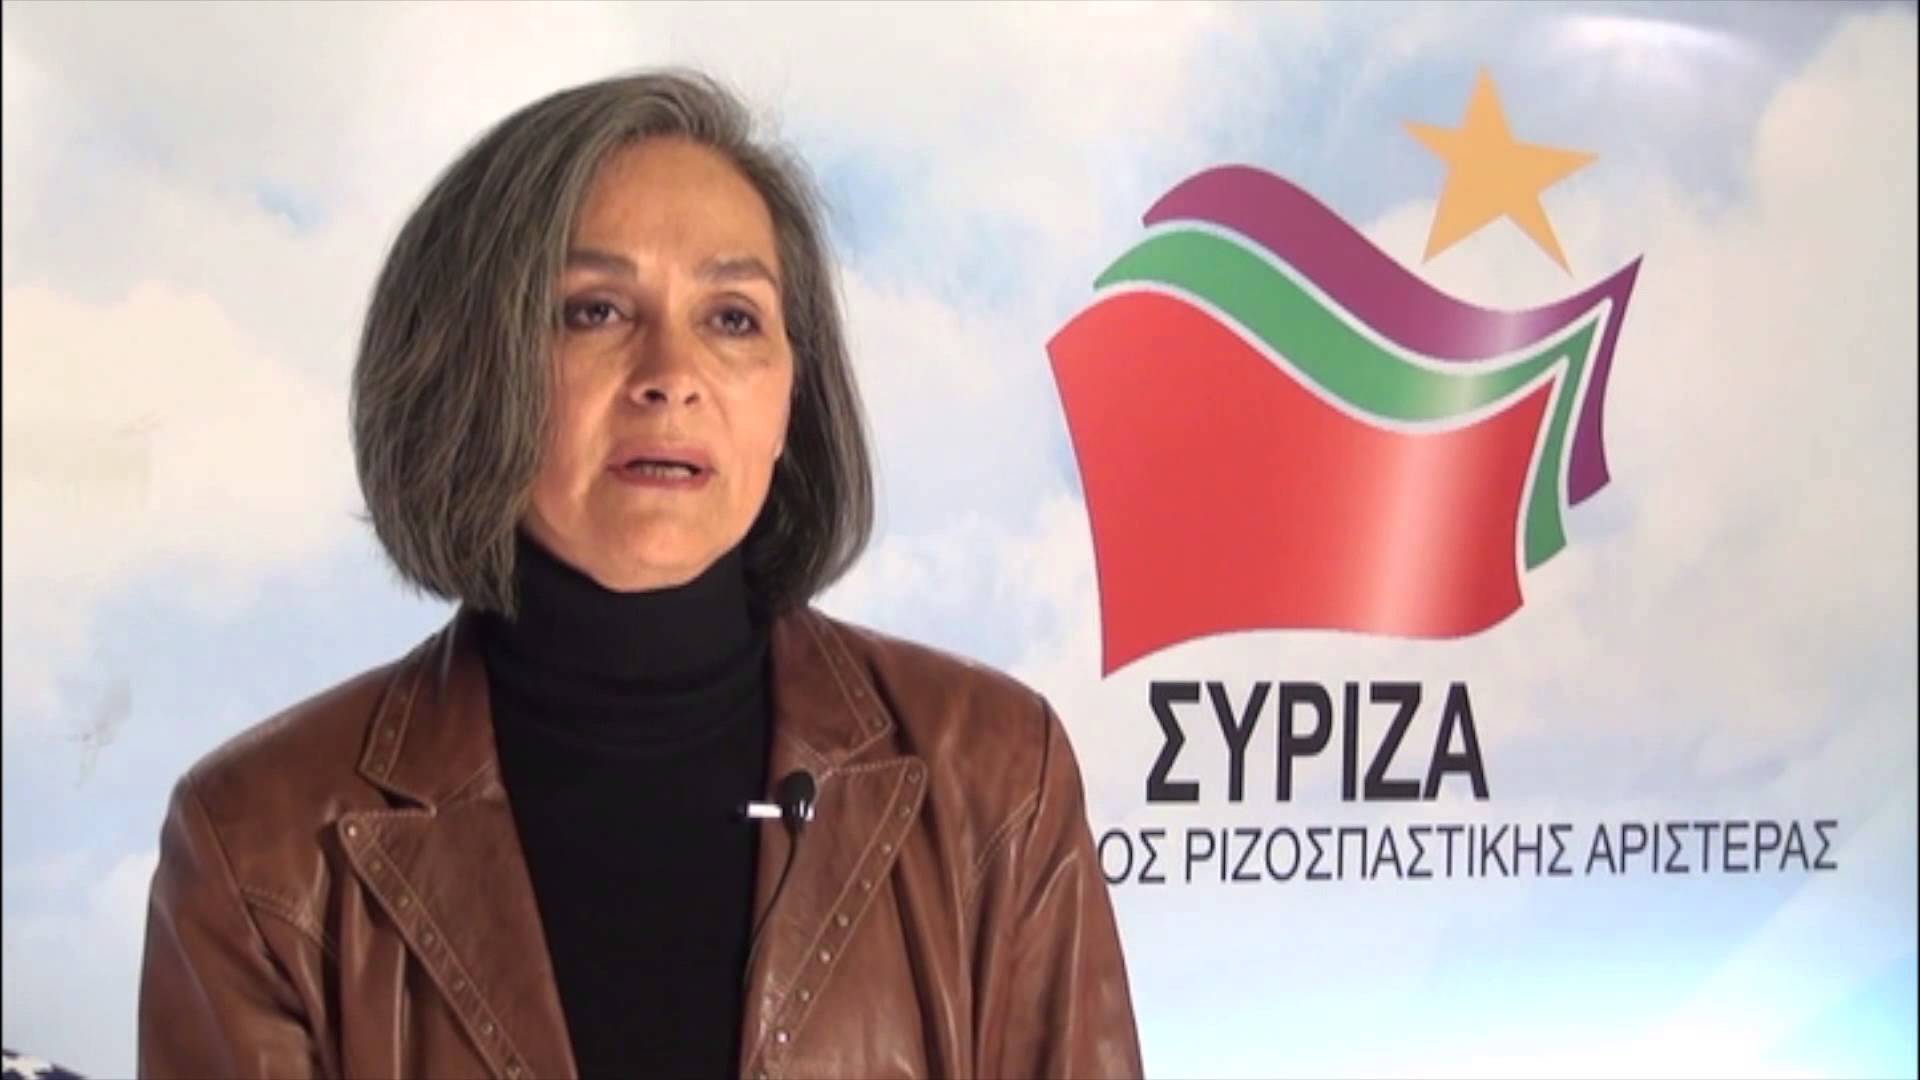 Σακοράφα για τους πρώην "συντρόφους" του ΣΥΡΙΖΑ:  Μόνο ντροπή νιώθω που κάποτε ήλπισα μαζί σας